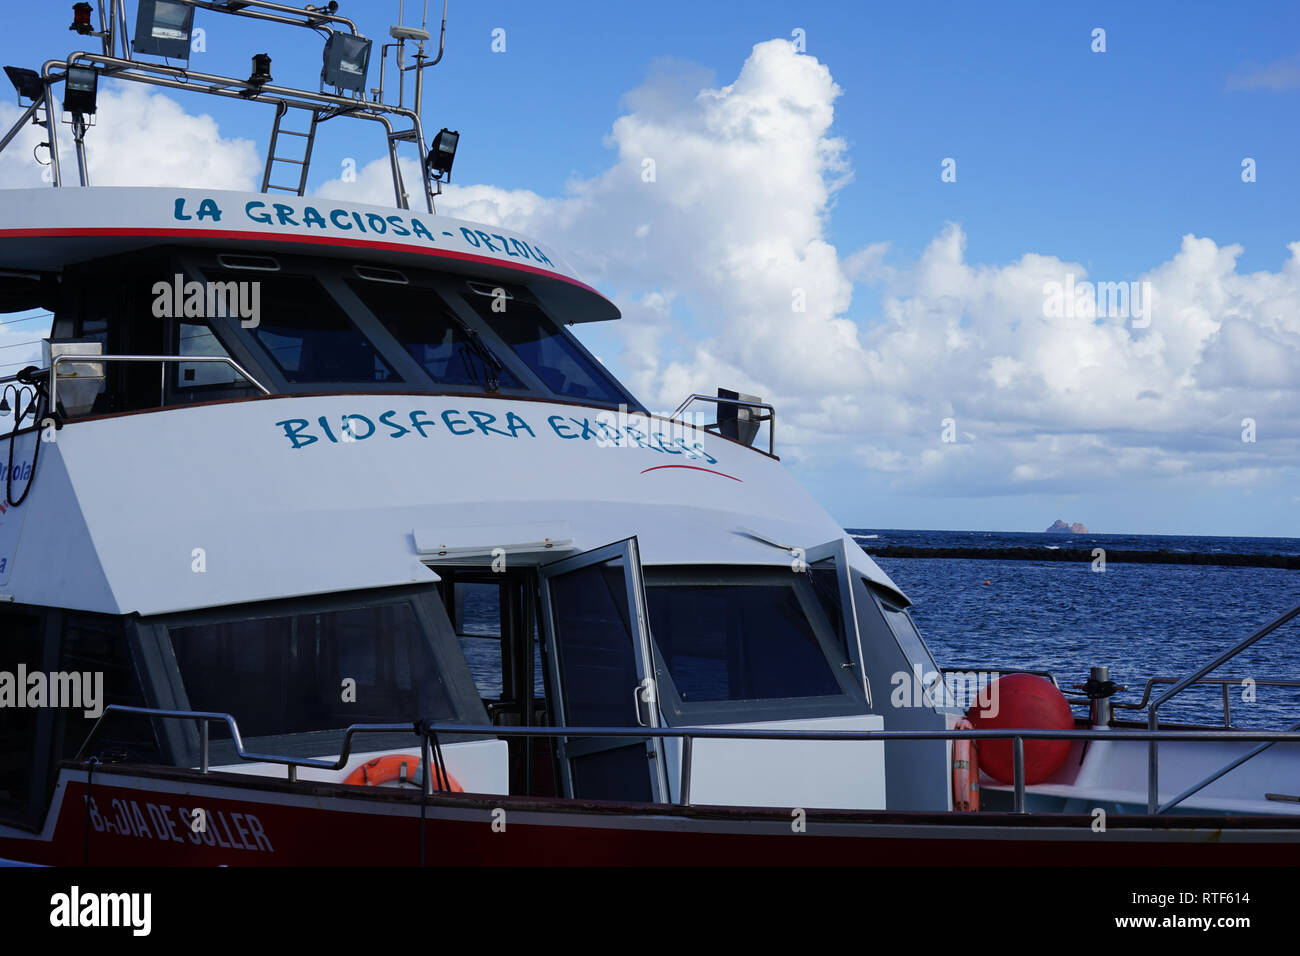 Biosfera Express, Personen-Fähre nach La Graciosa, Hafen von Orzola, Lanzarote, Kanarische Inseln Stock Photo